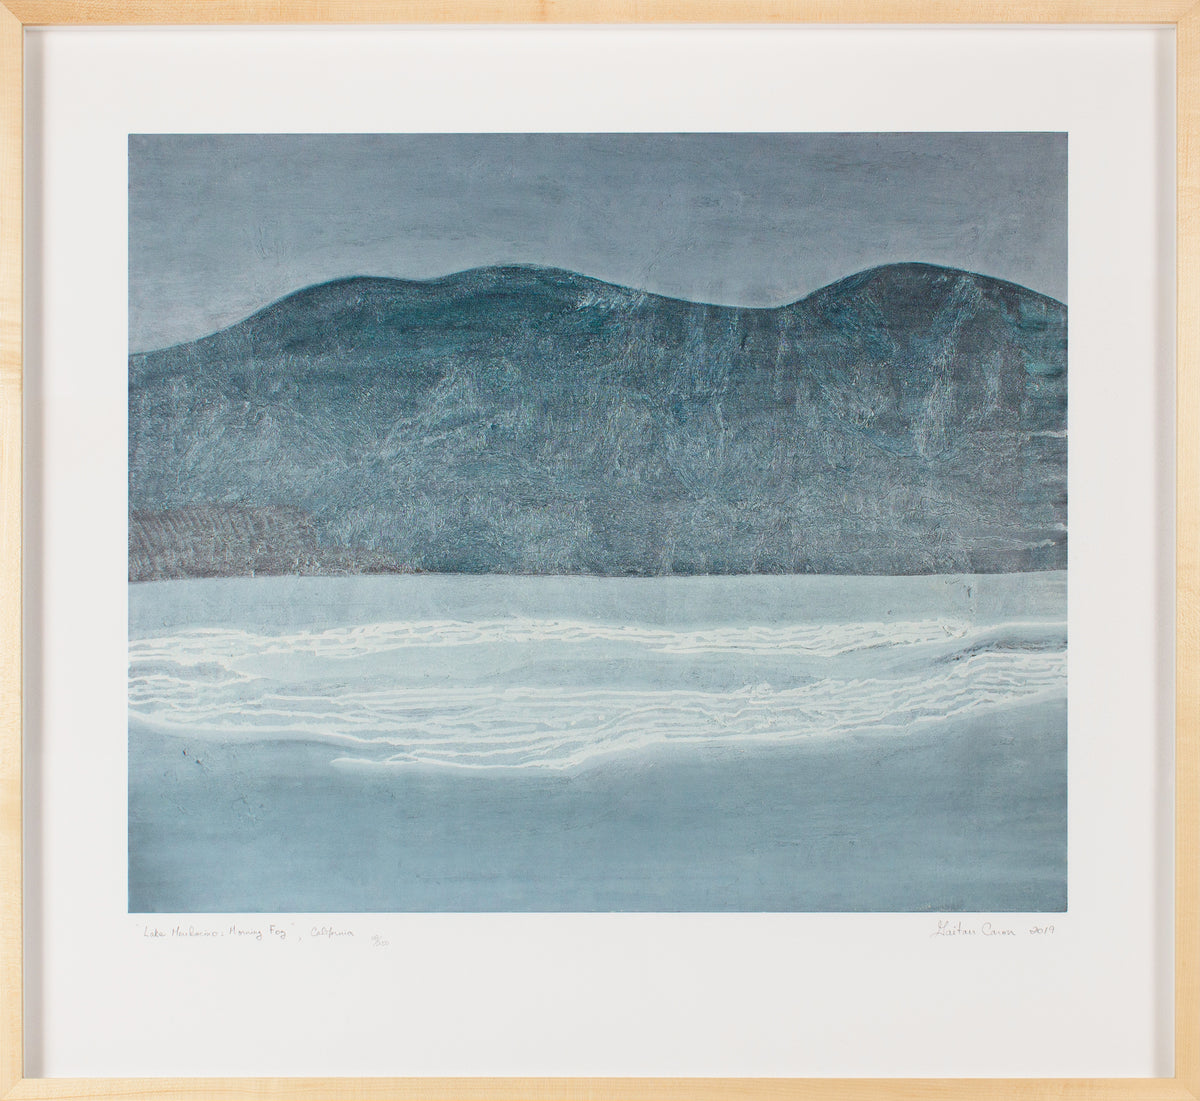 &lt;i&gt;Lake Mendocino: Morning Fog&lt;/i&gt; &lt;br&gt;Limited Edition Archival Print &lt;br&gt;&lt;br&gt;ART-16835